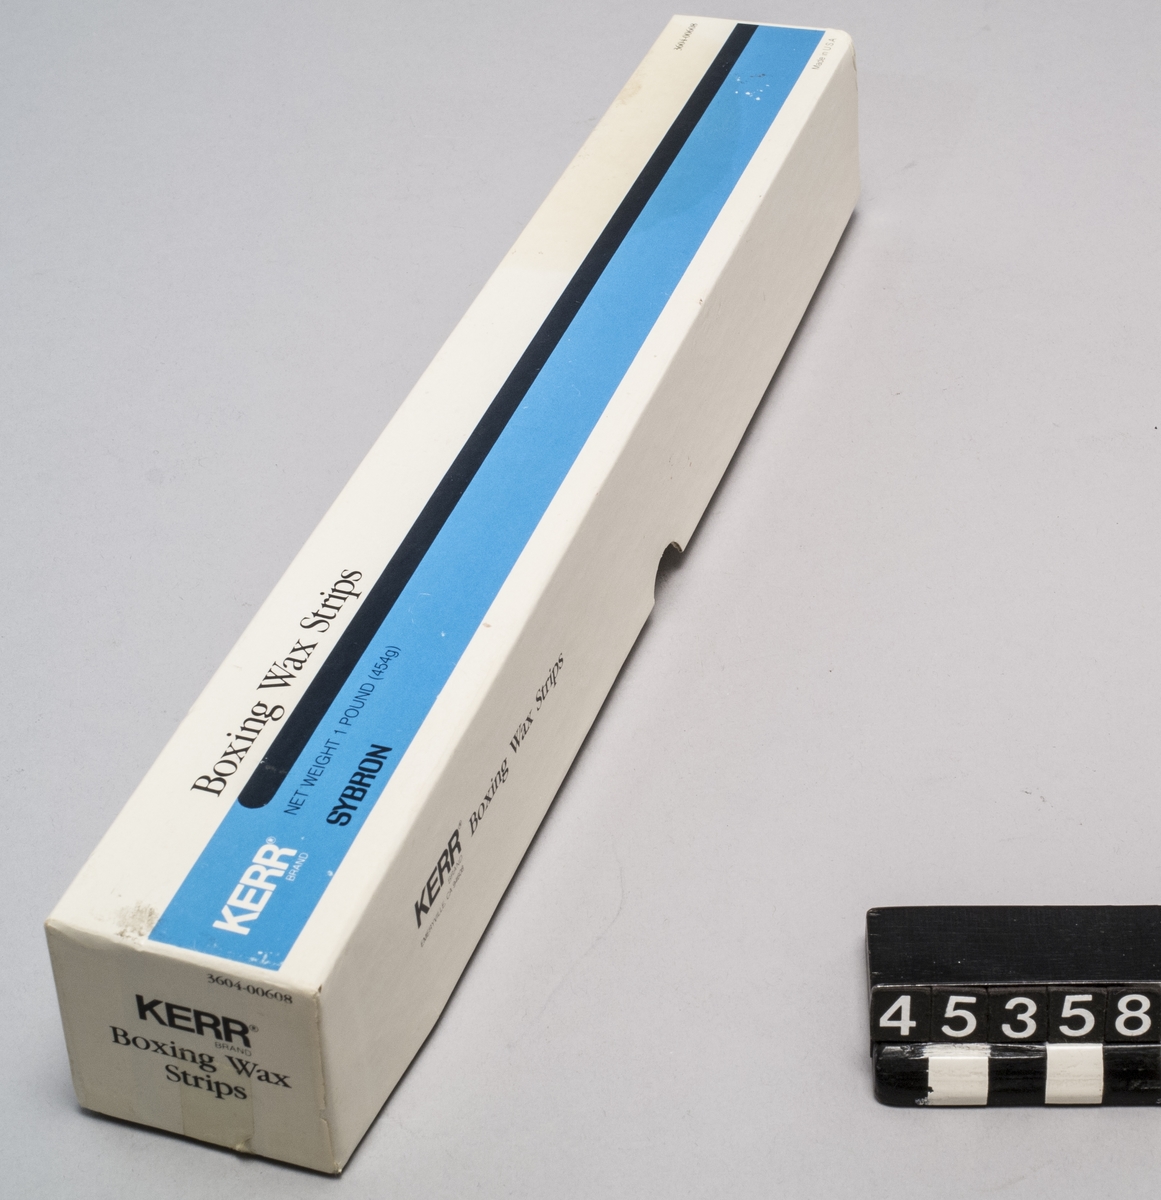 "Boxing Wax Strips", 454 g (1 pound) tillverkare Kerr brand, Emeryville, California  Vaxet är avsett att göra avgjutningar med, exempelvis för tandläkare, men har i detta sammanhang använts för att fästa preparat i samband med mikroskopi.